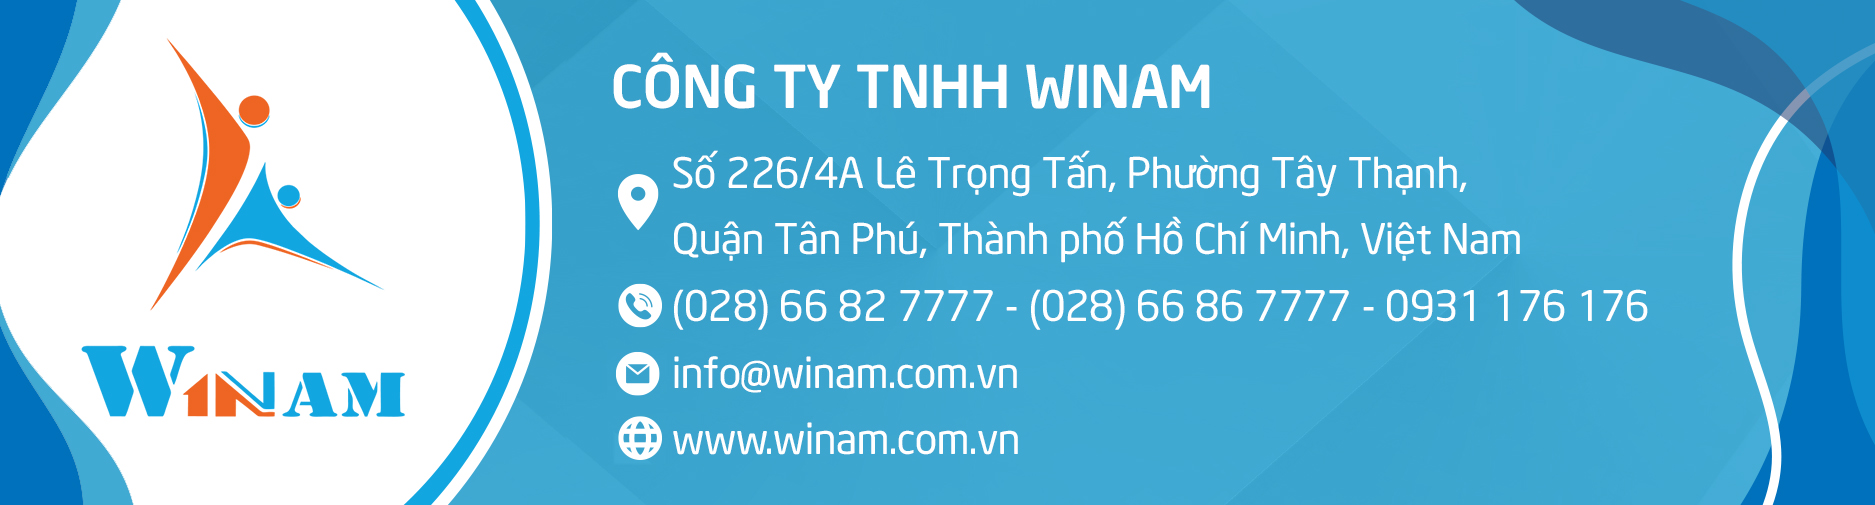 Thông tin liên hệ Công ty TNHH WinAm